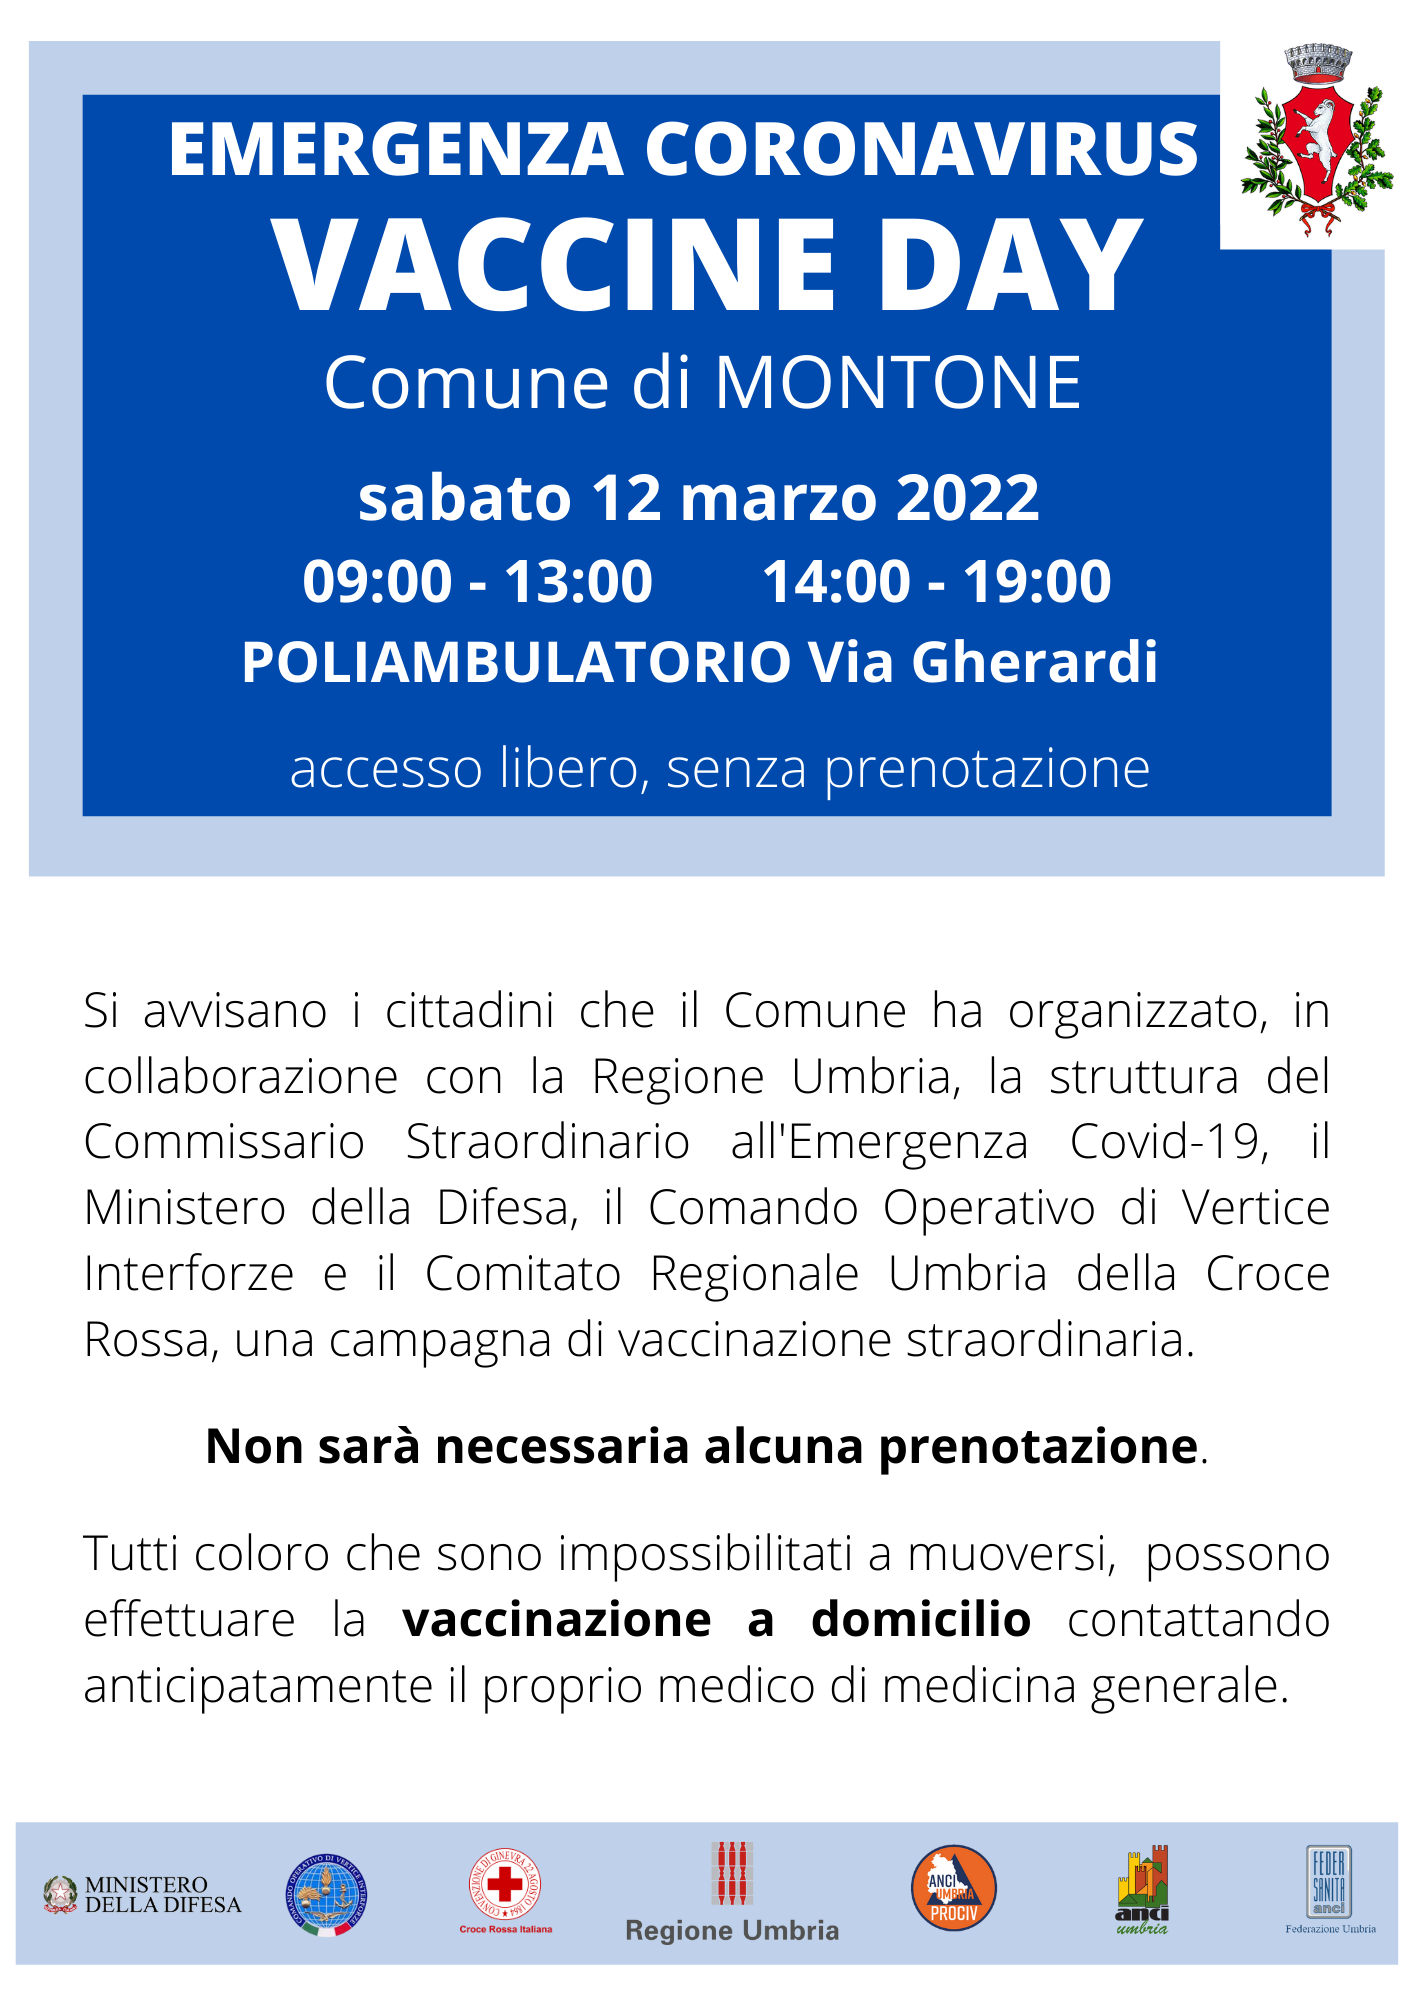 Montone – Sabato 12 marzo open day vaccinale nel borgo